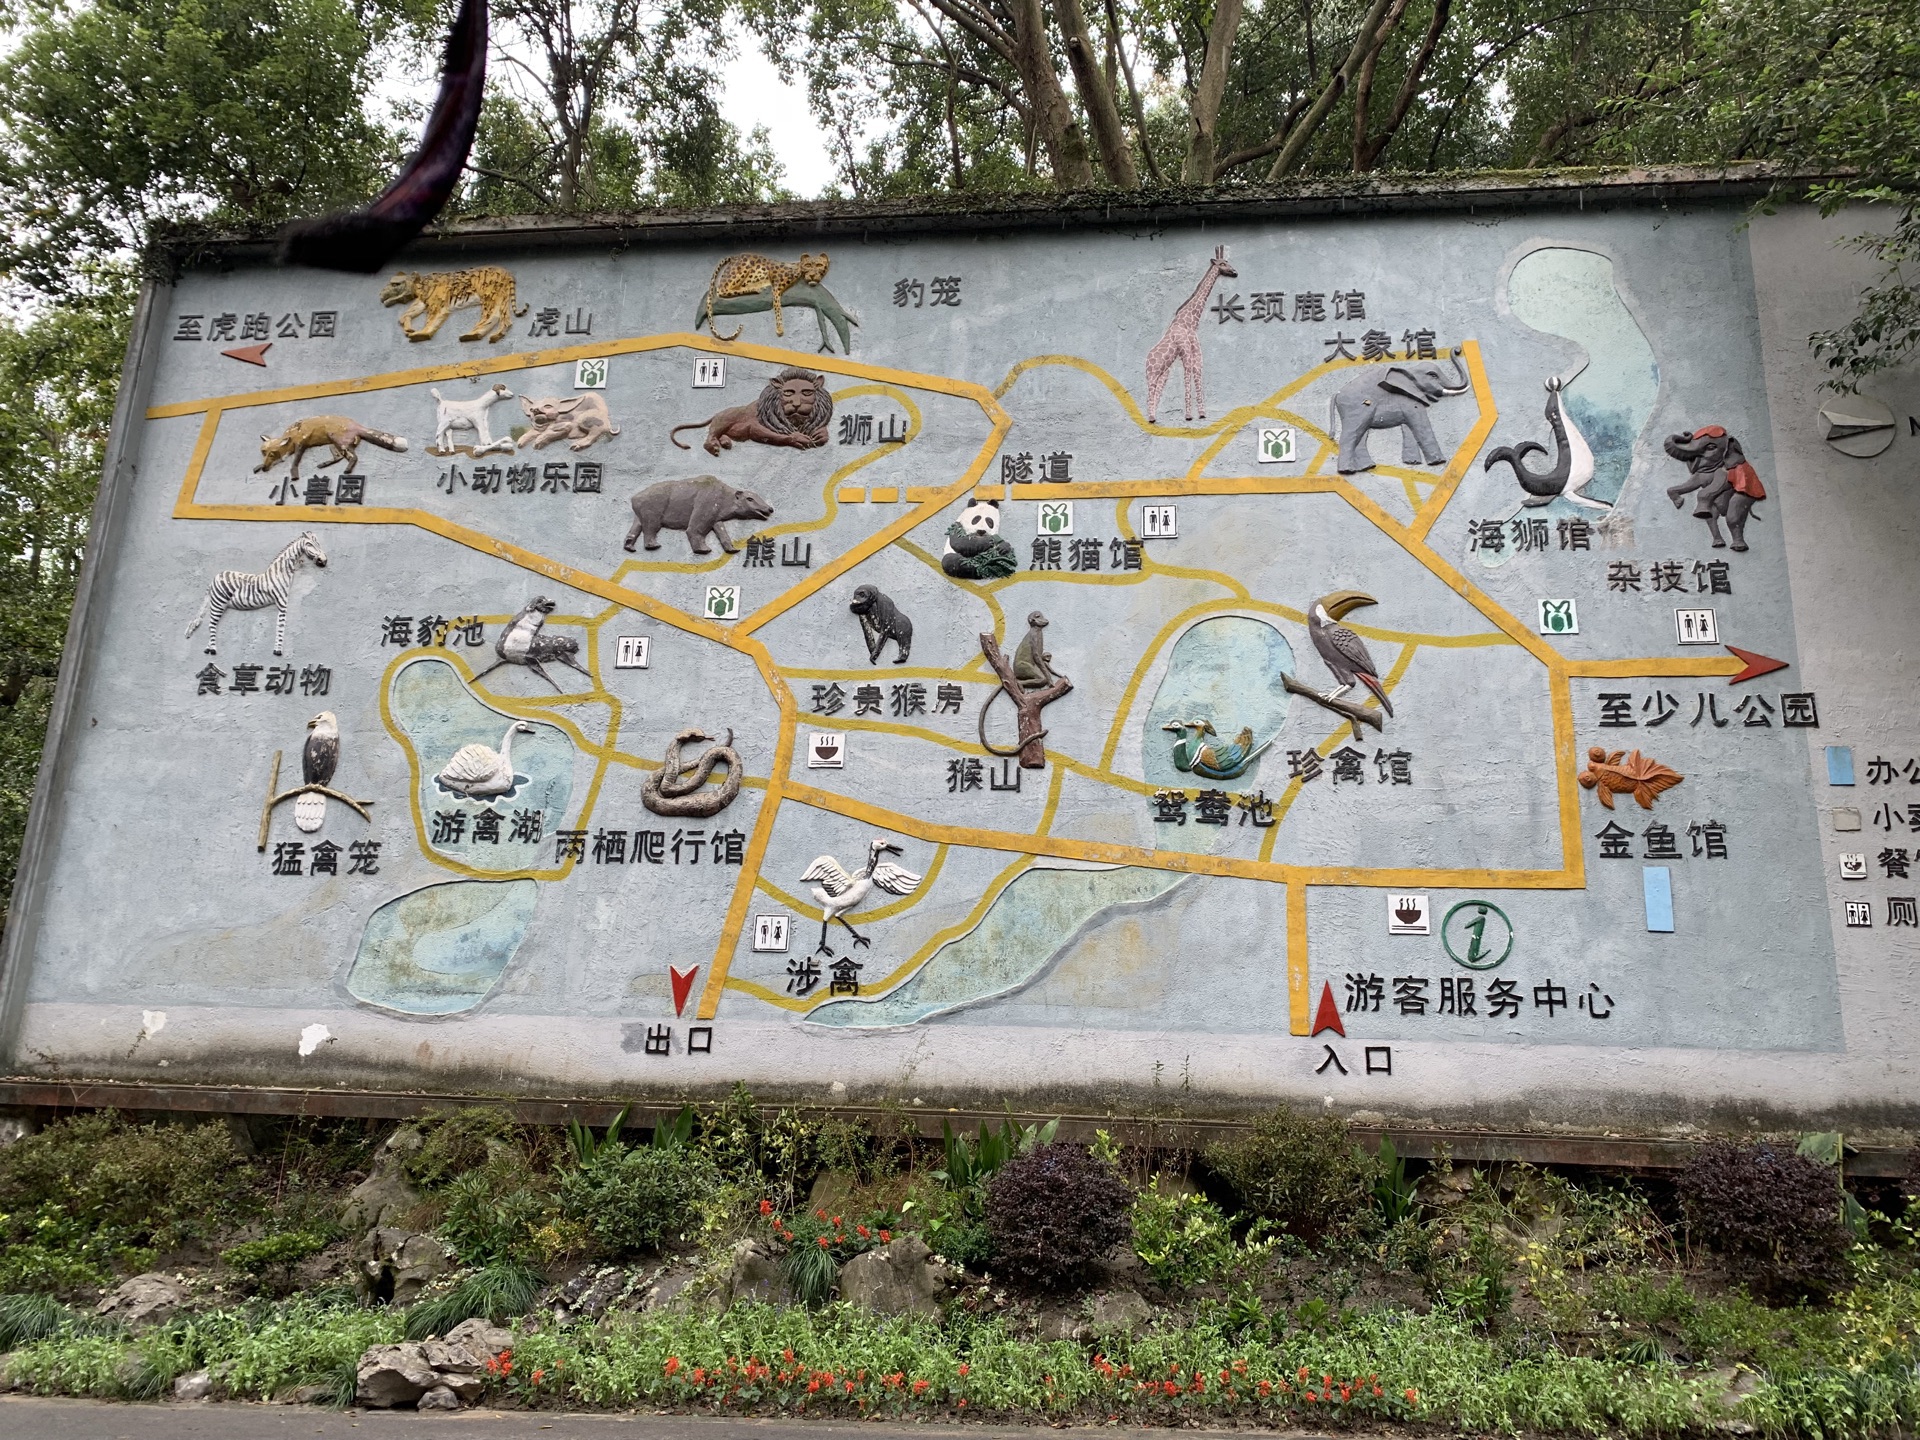 杭州野生动物园动物儿童动物园景观工程 - 2012全国十大园林景观工程优秀案例网络评选 - 中国园林网